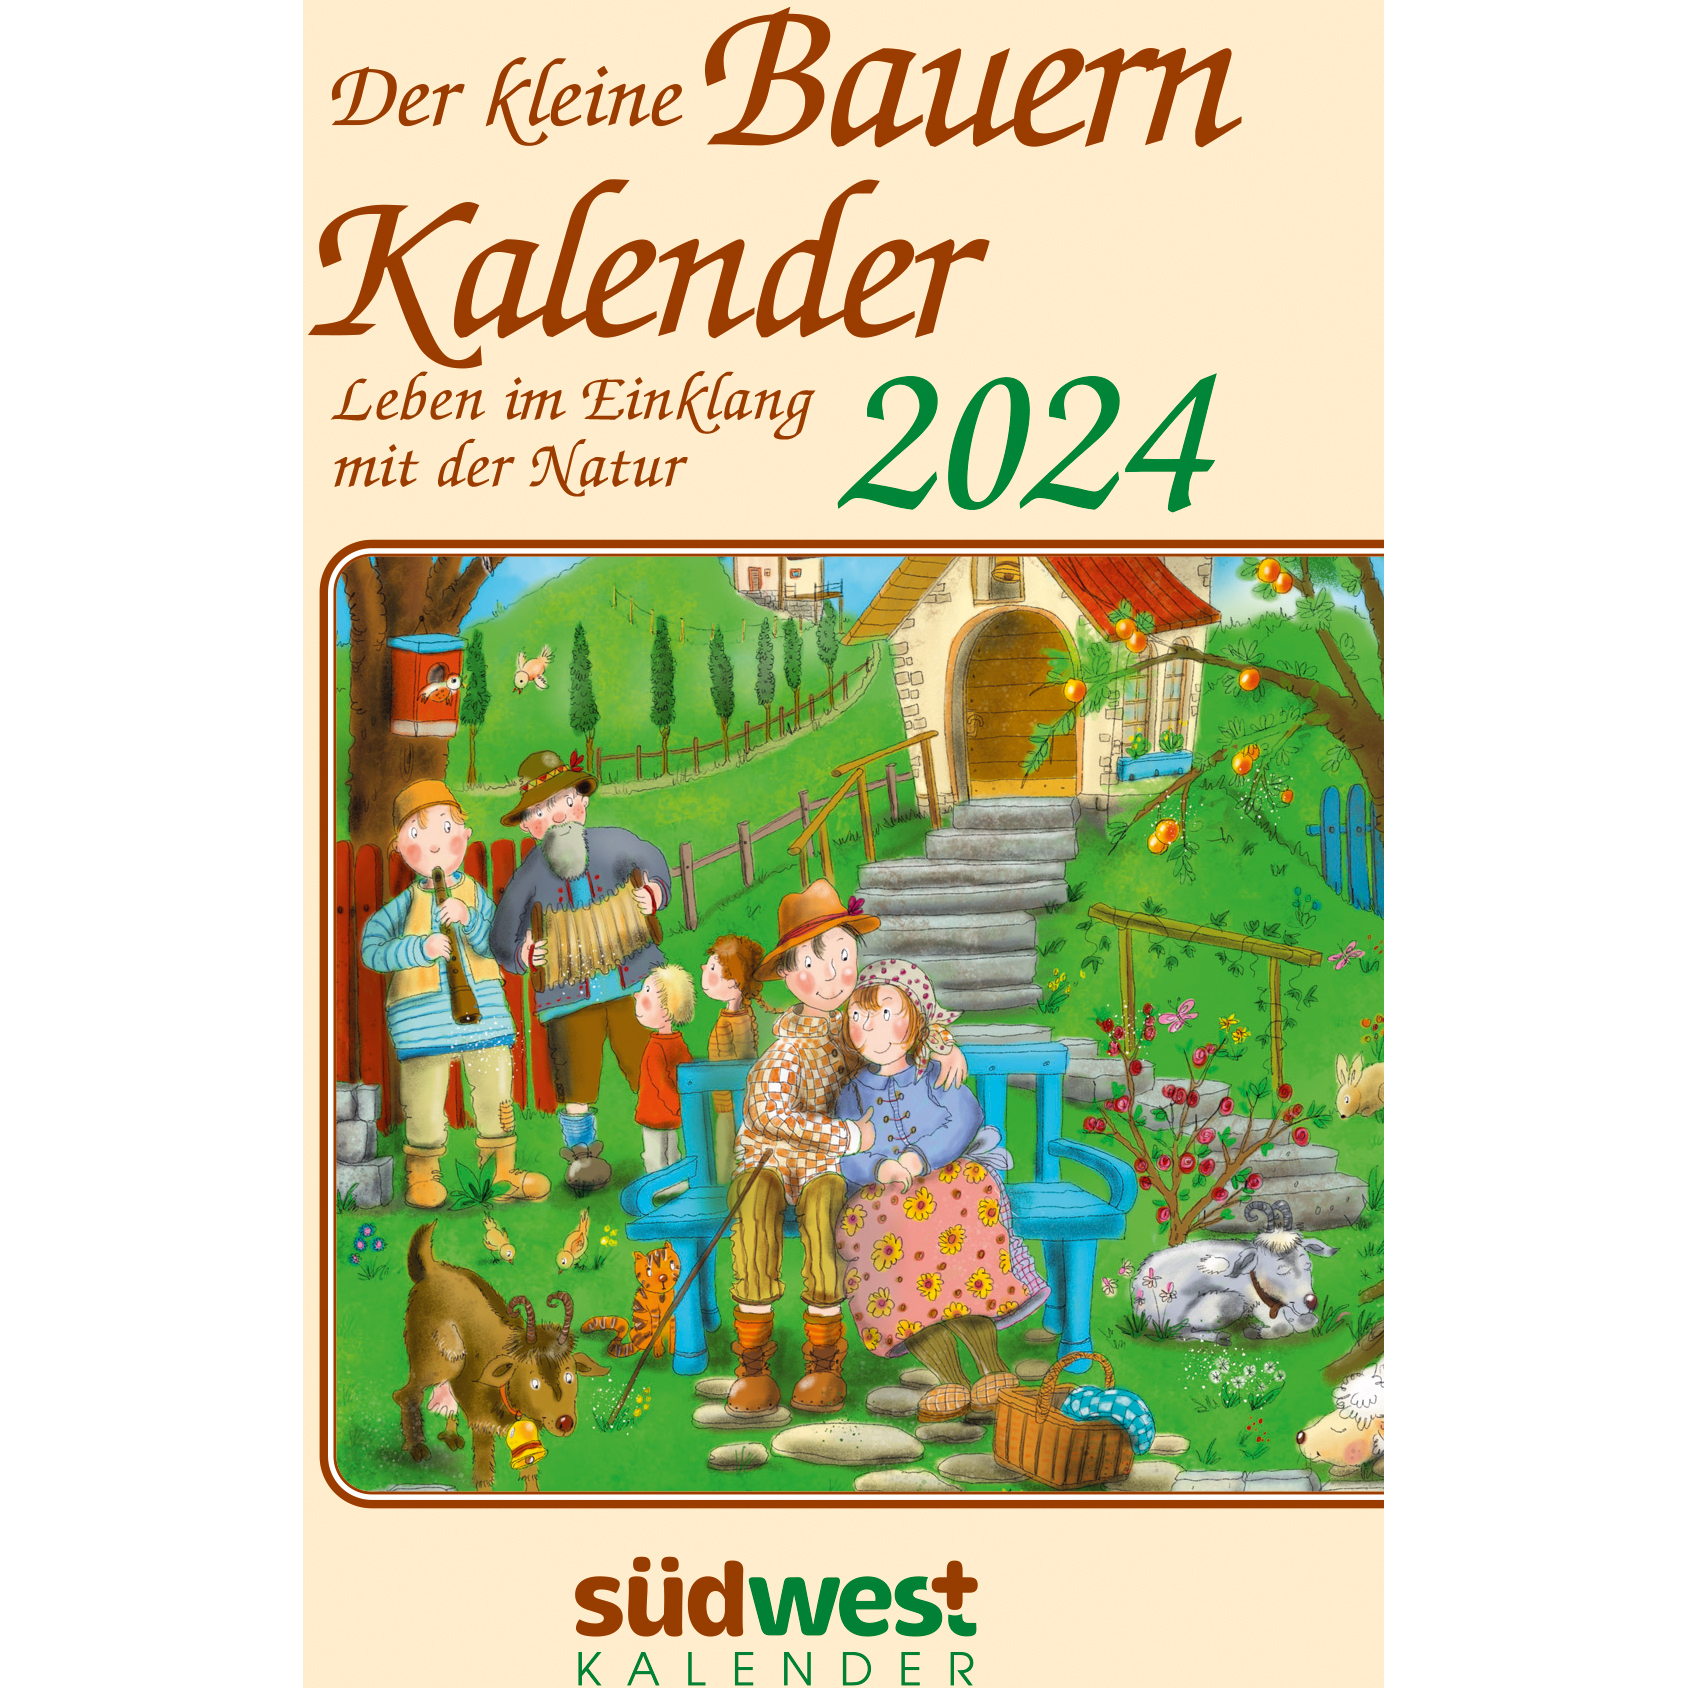 SÜDWEST Der kleine Bauernkalender 2024 42939152 DE 10x15.5cm